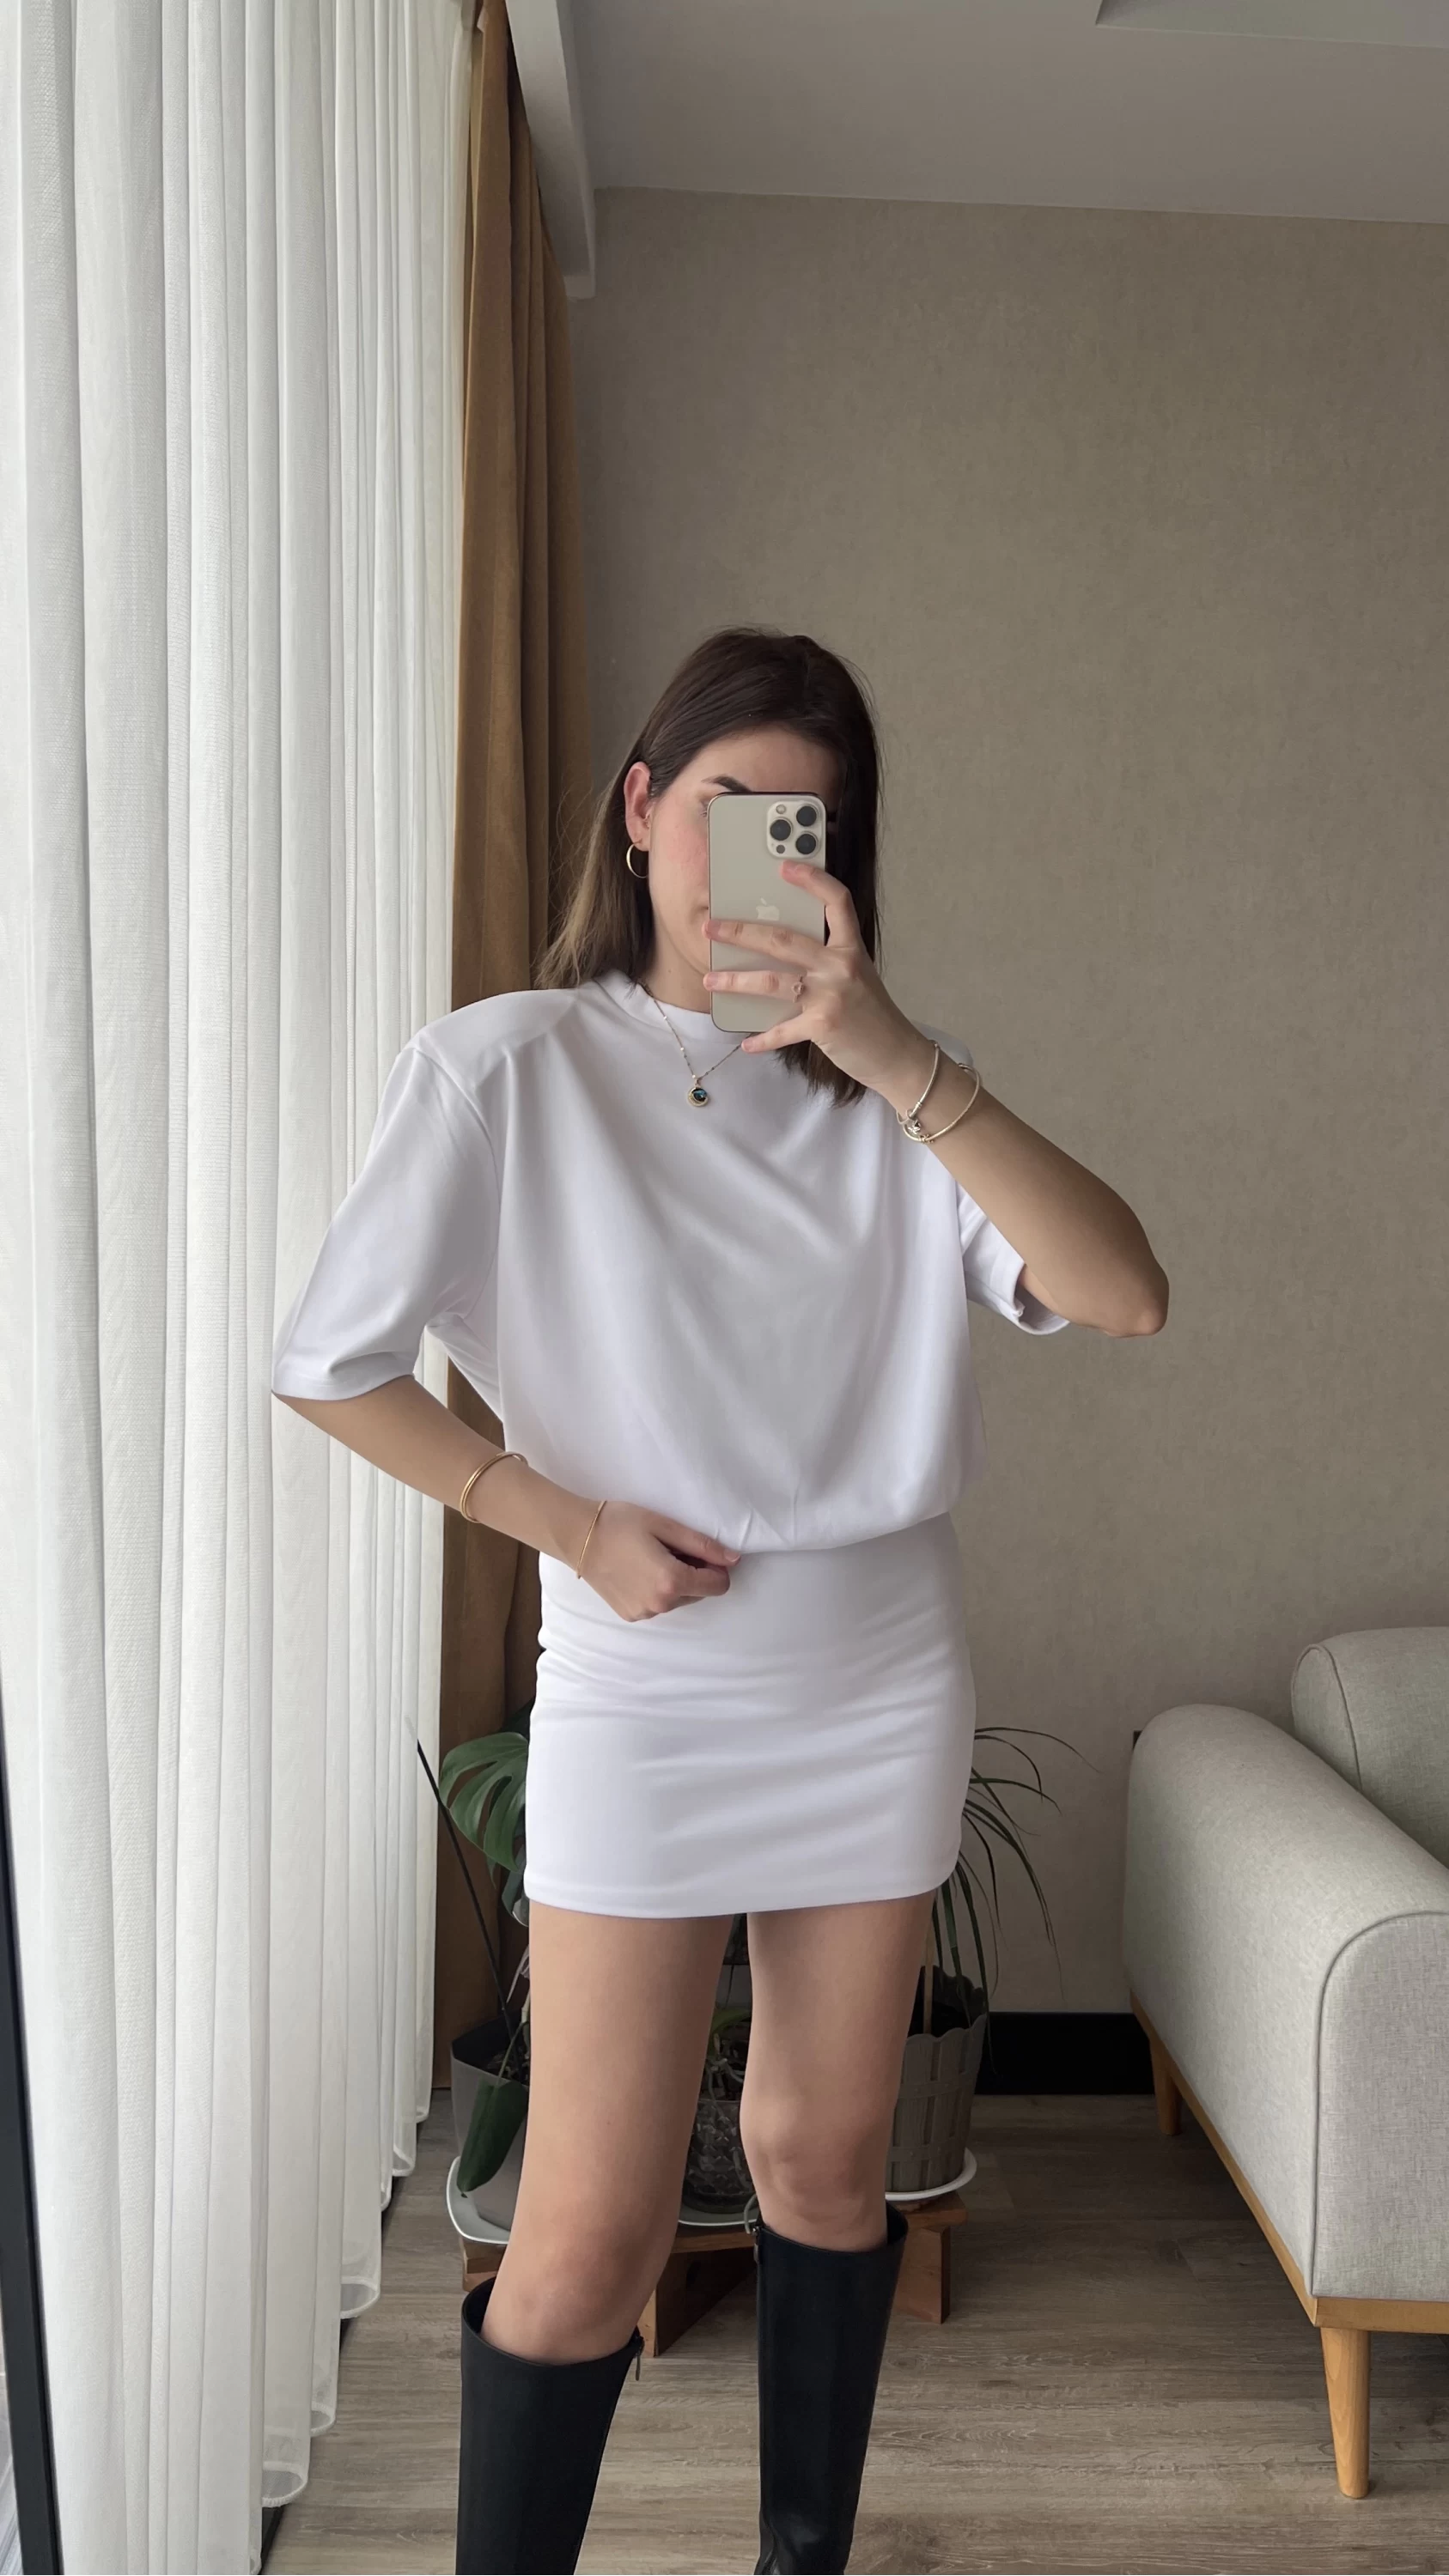 Premium Beyaz Vatkalı Elbise